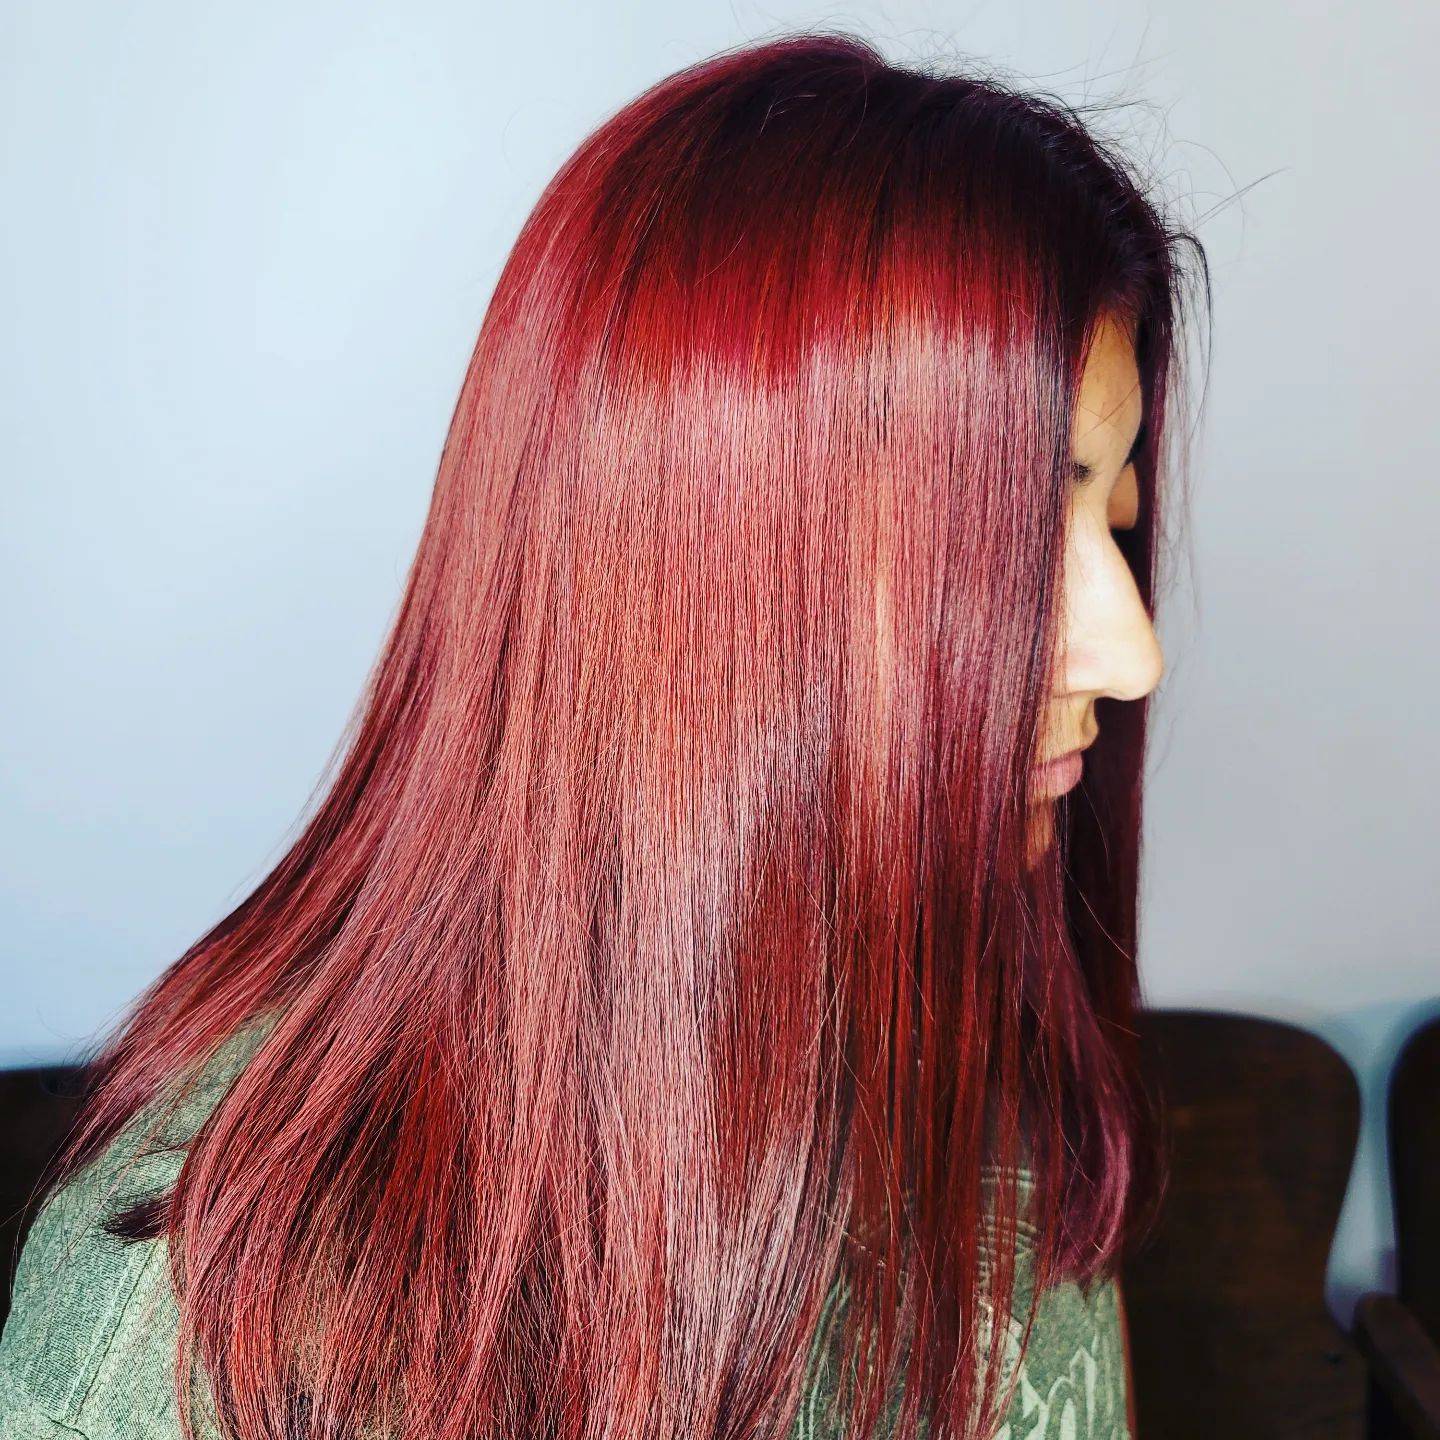 Burgundy hair color 228 burgundy hair color | burgundy hair color for women | burgundy hair color highlights Burgundy Hair Color